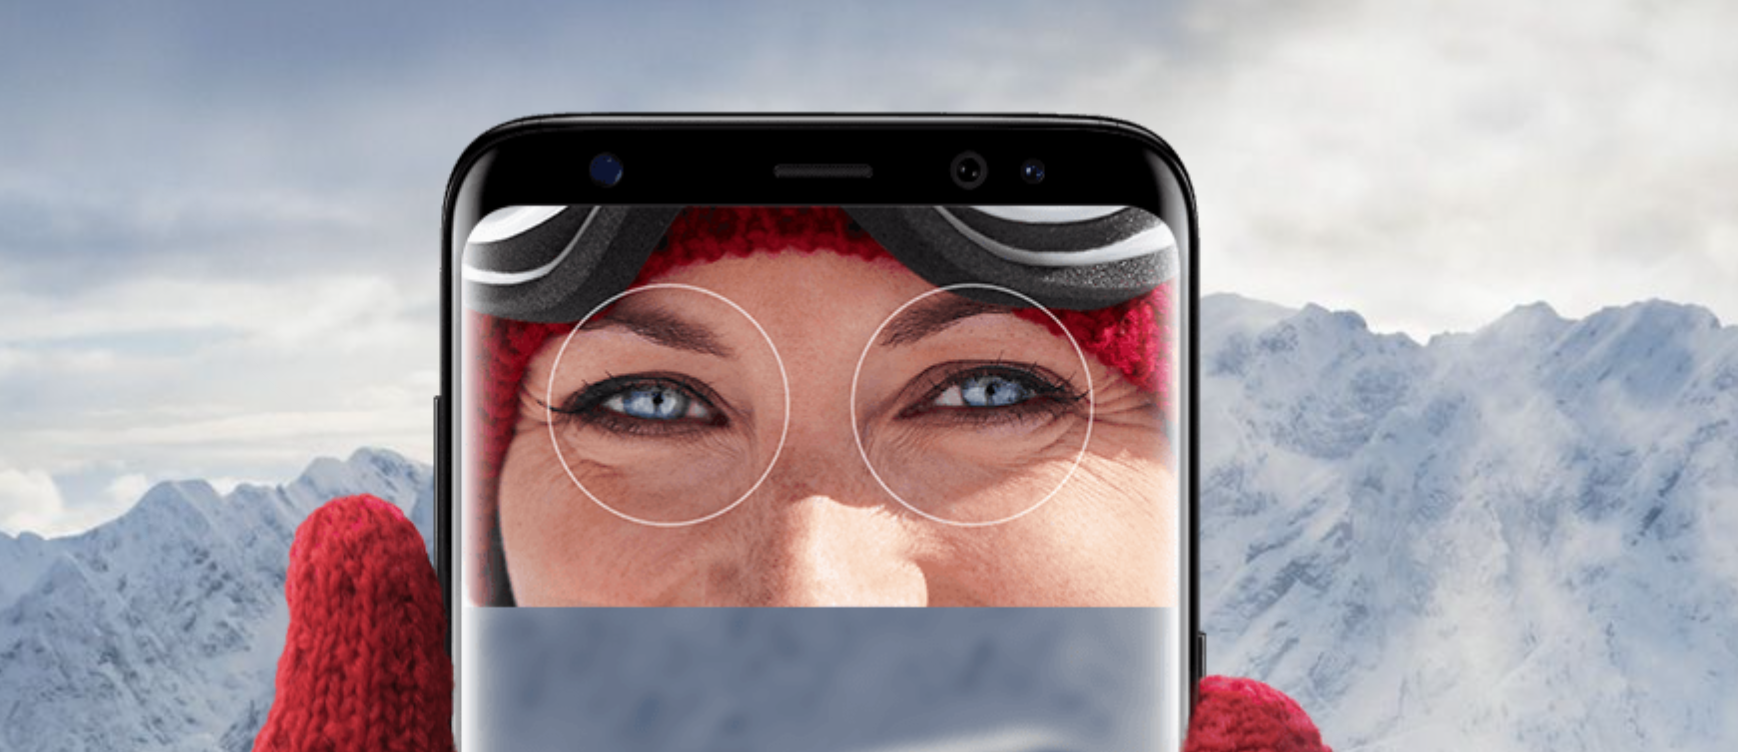 Samsung เริ่มแสดงความเคลื่อนไหวหลังสามารถใช้รูปภาพและคอนแทคเลนส์หลอกสแกนม่านตาได้